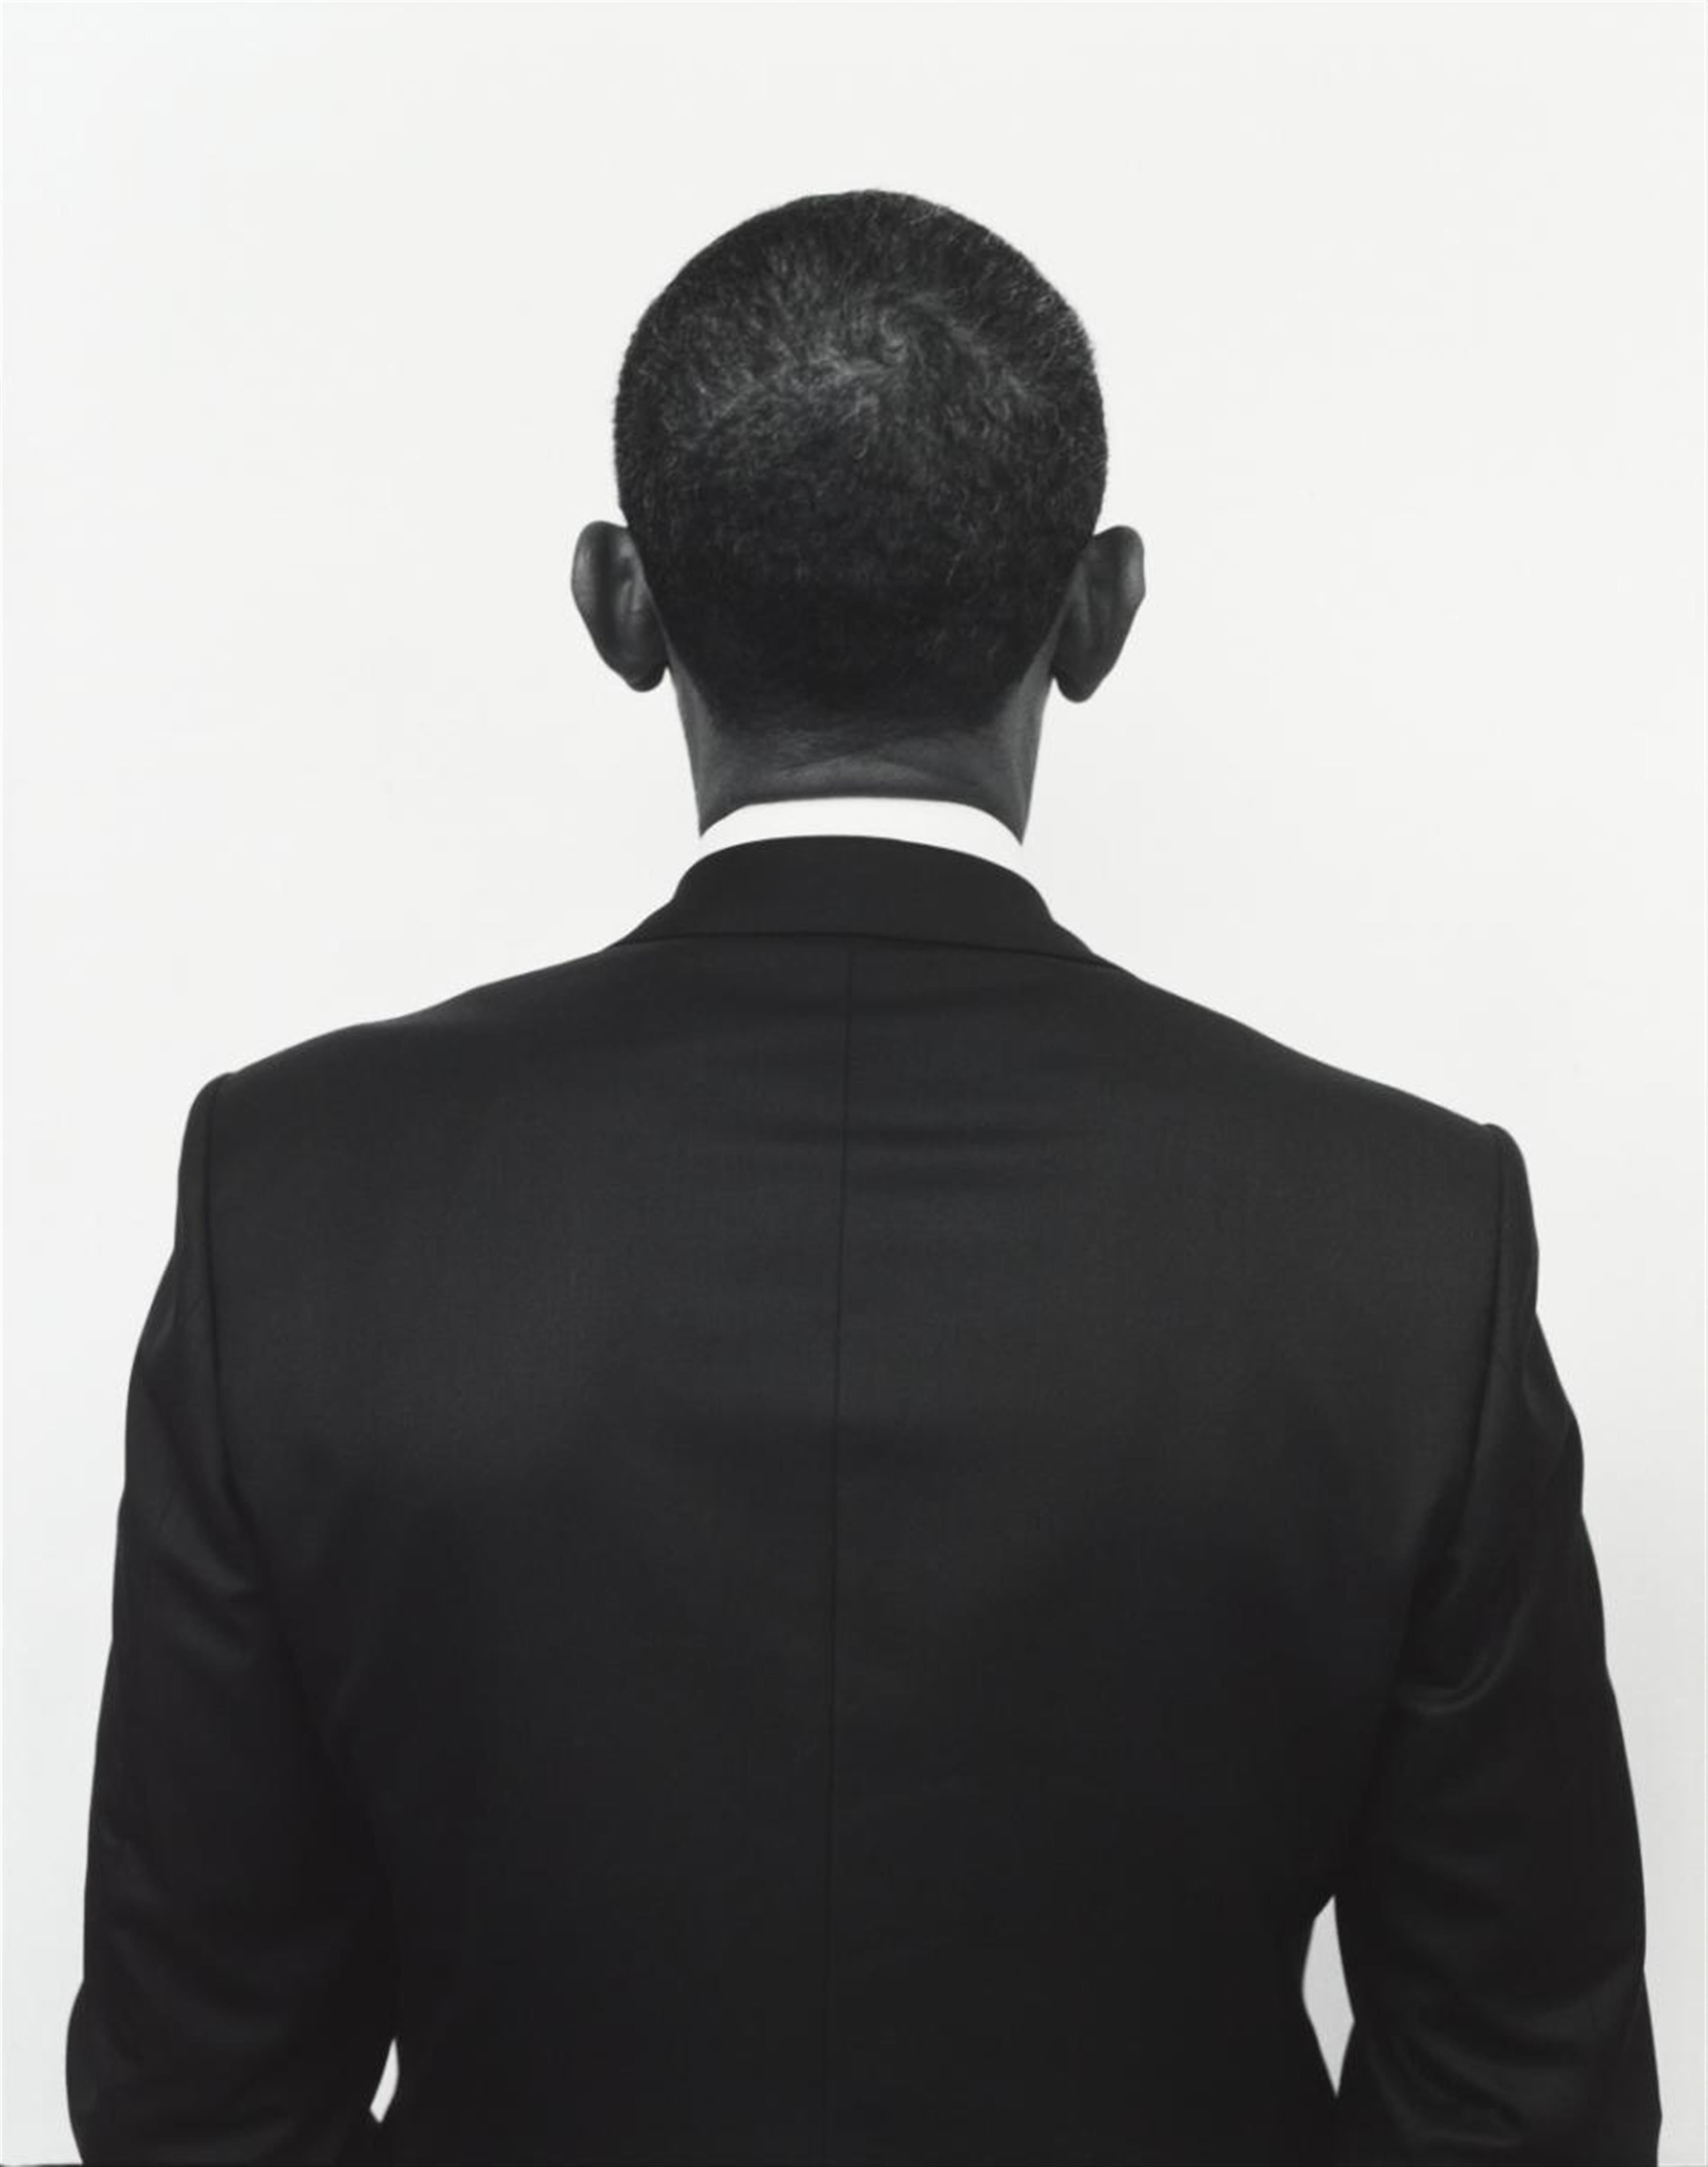 Mark Seliger - Barack Obama, The White House, Washington - image-1